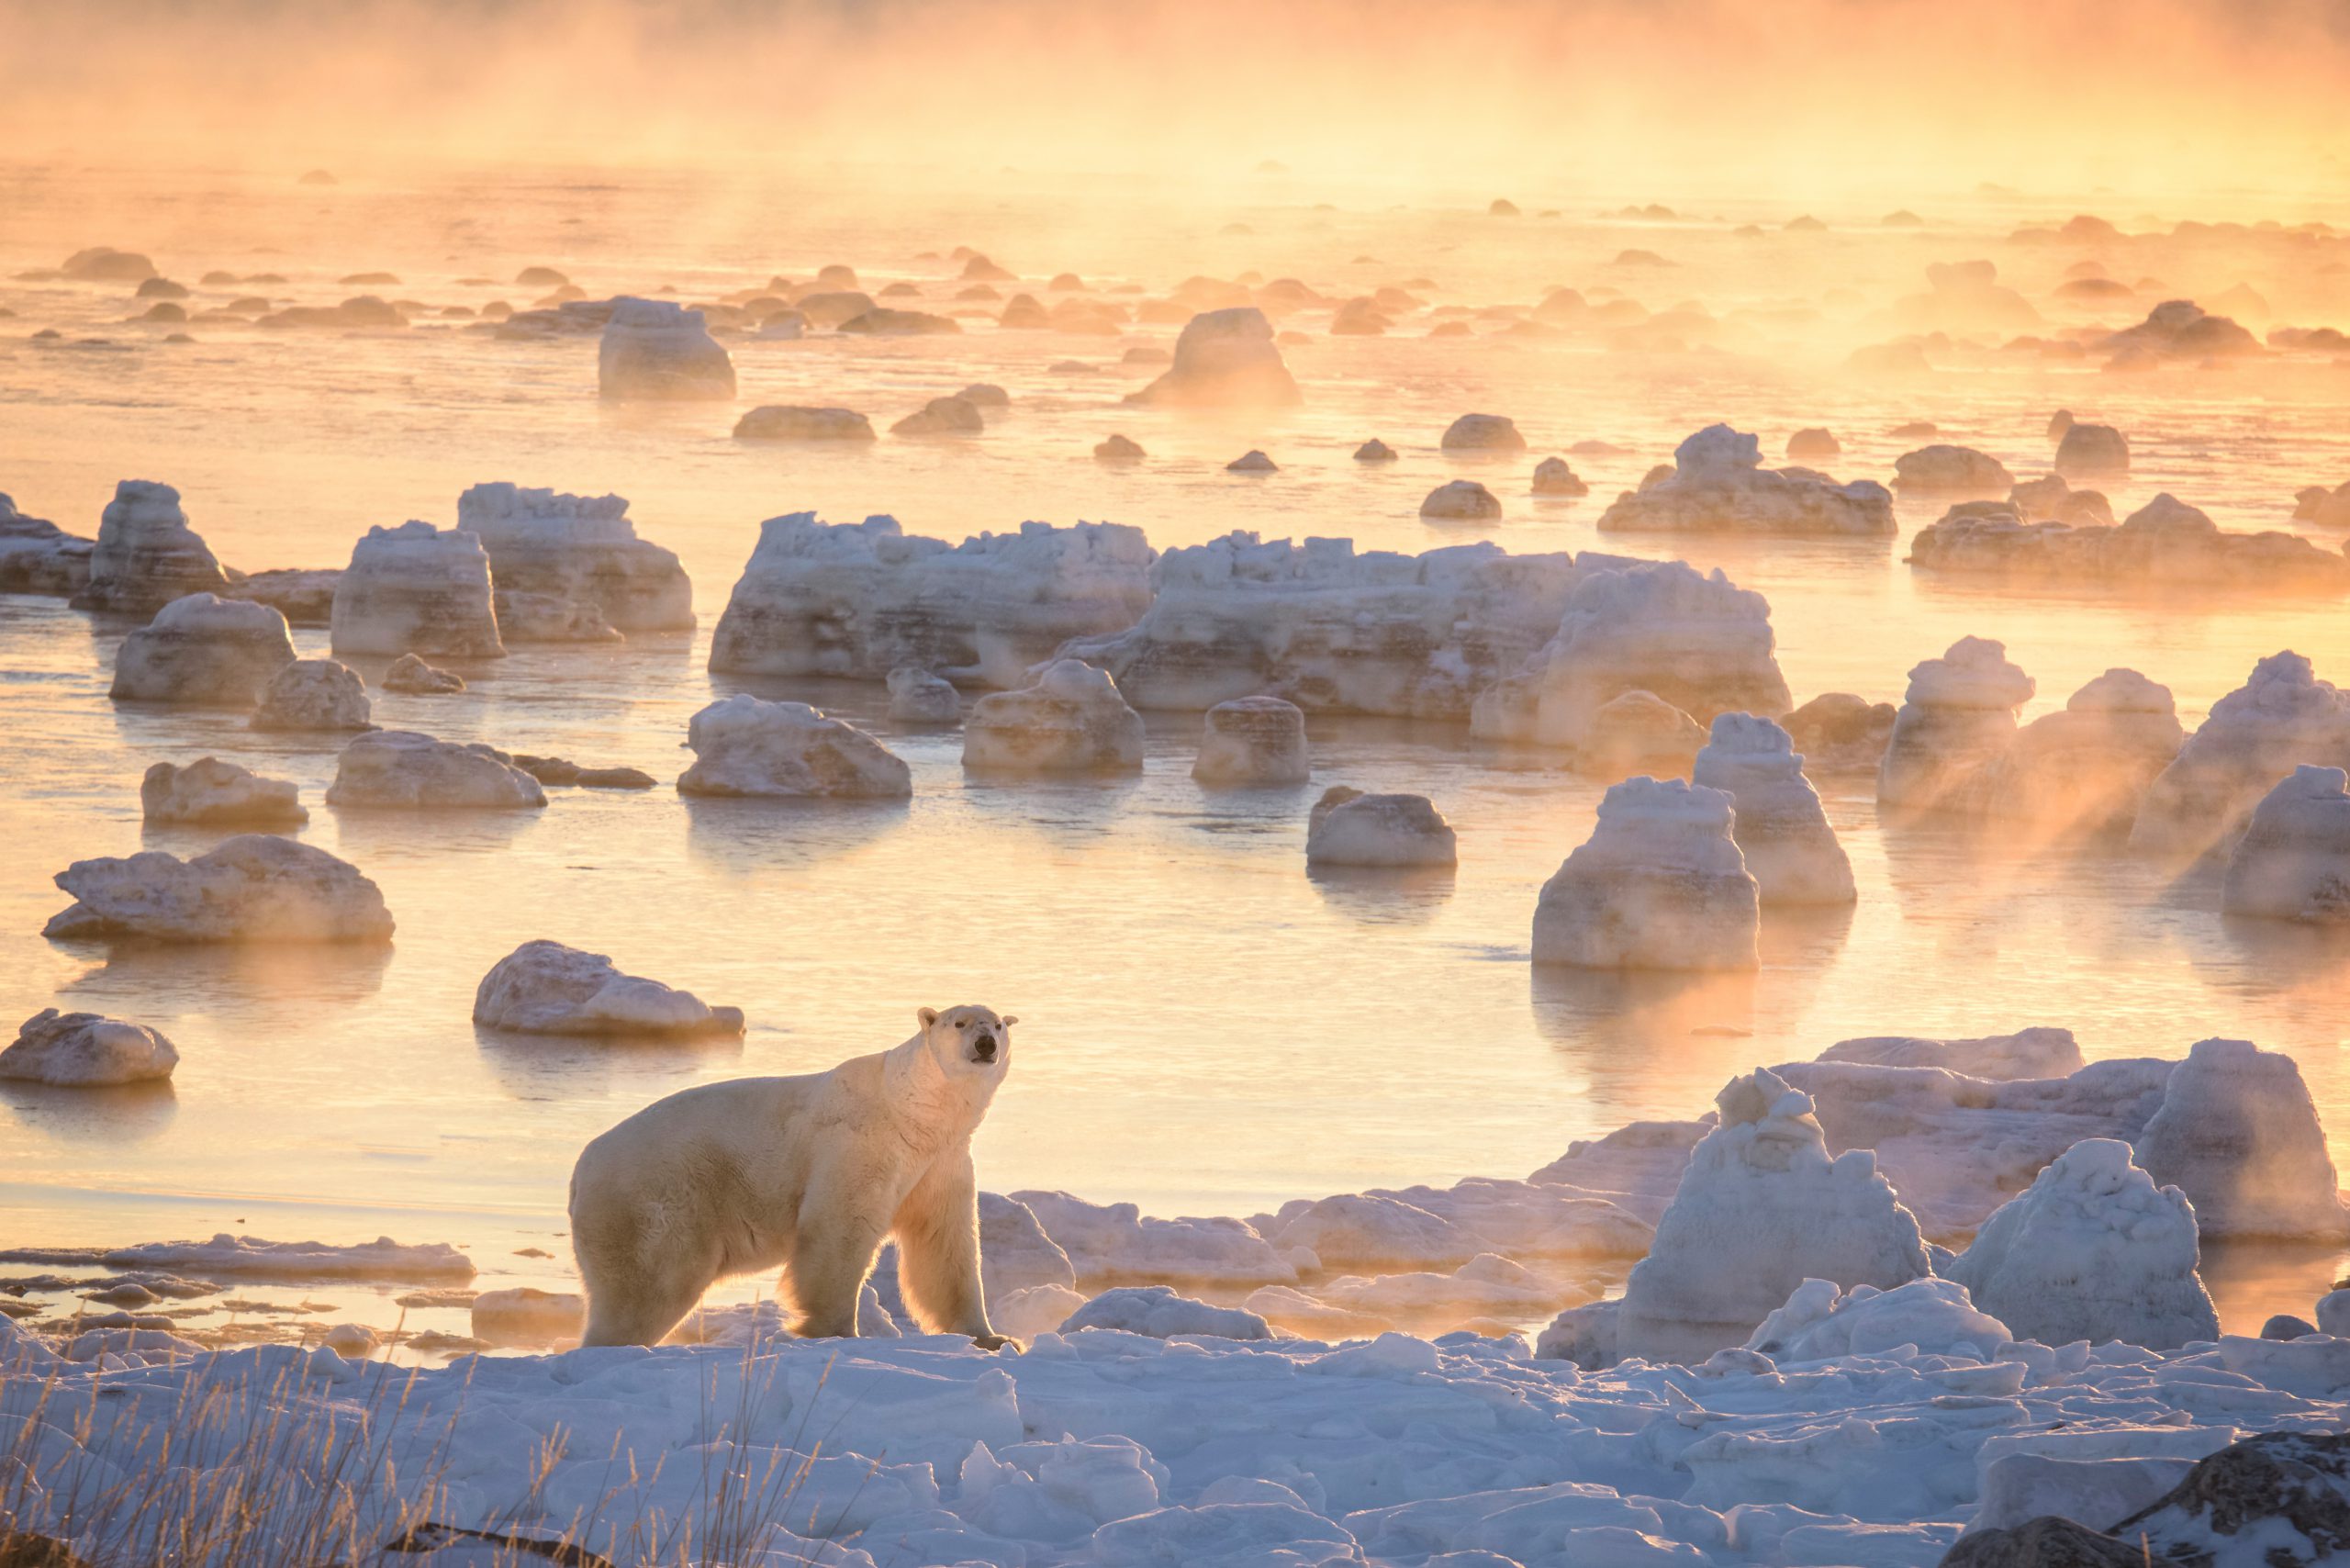 Polar bear in the Hudson Bay. Rick Beldegreen photo.